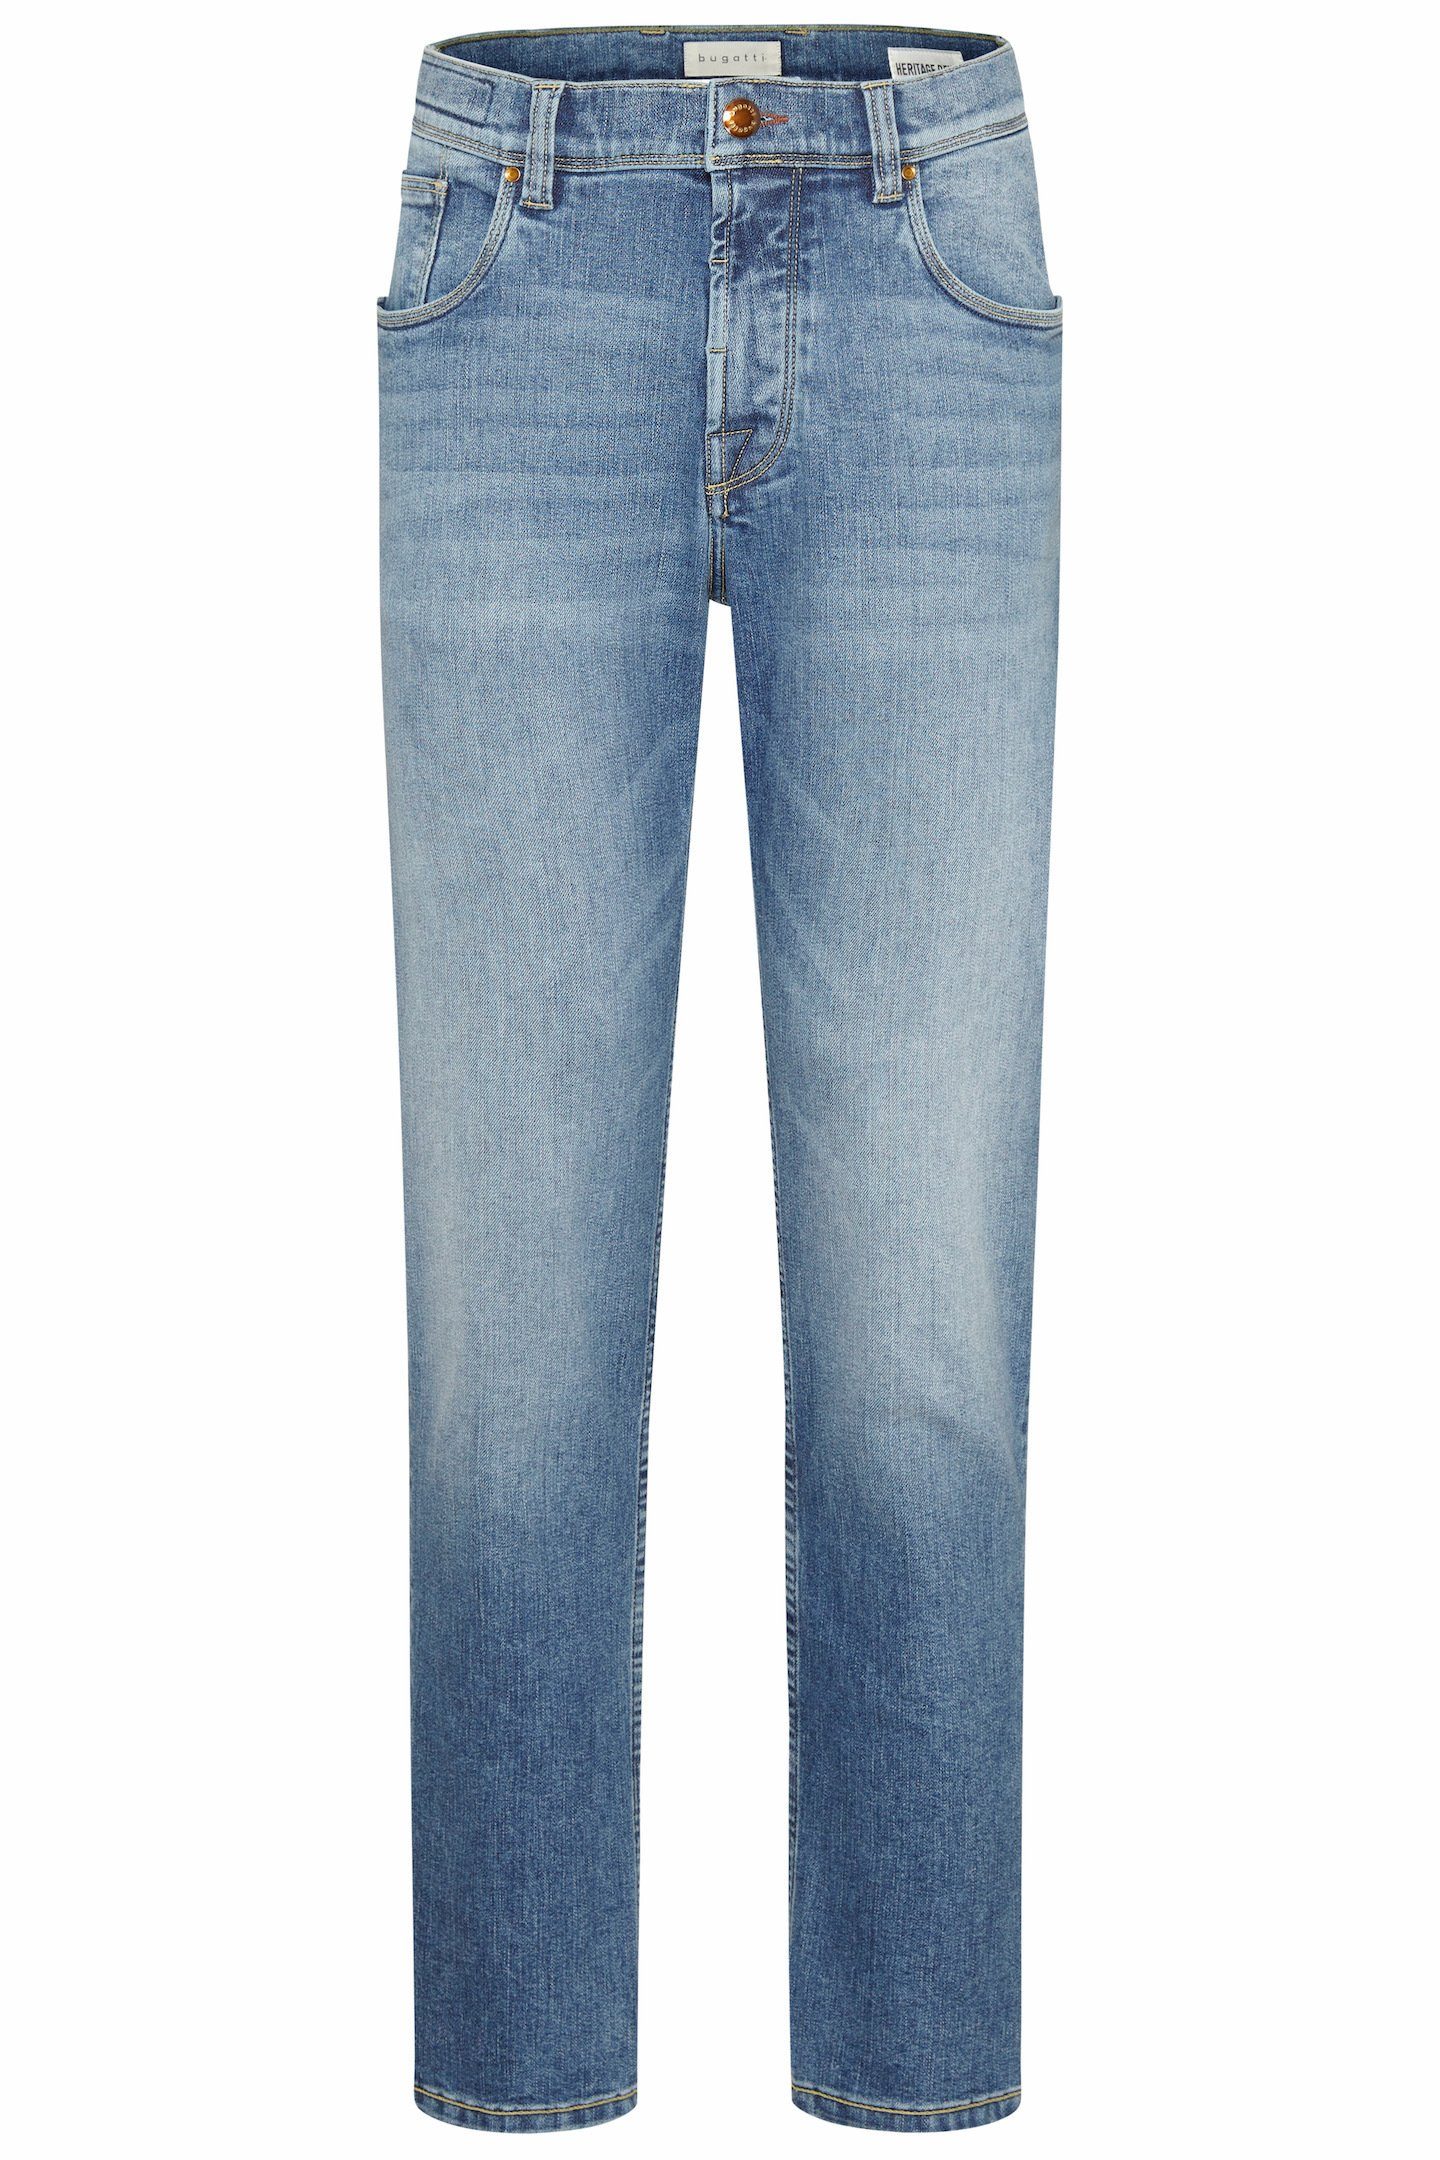 bugatti 5-Pocket-Jeans im Used Look Wash blau